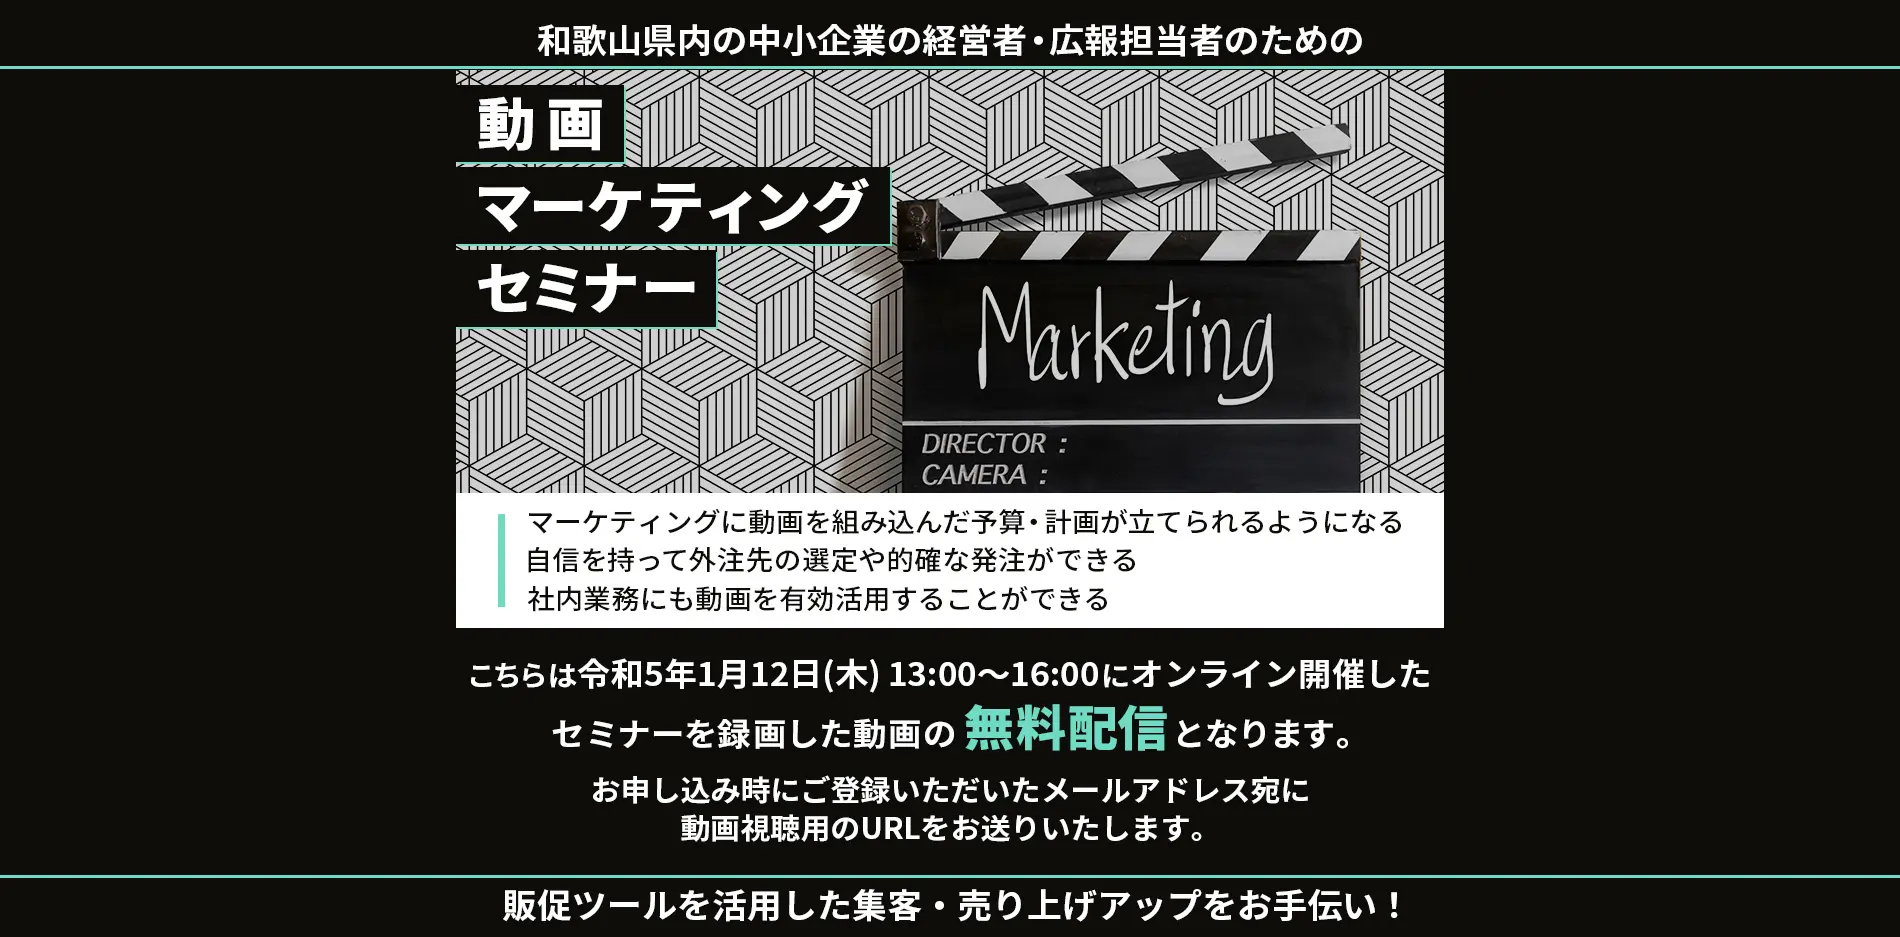 和歌山県内の中小企業の経営者、広報担当者のための、動画マーケティングセミナー